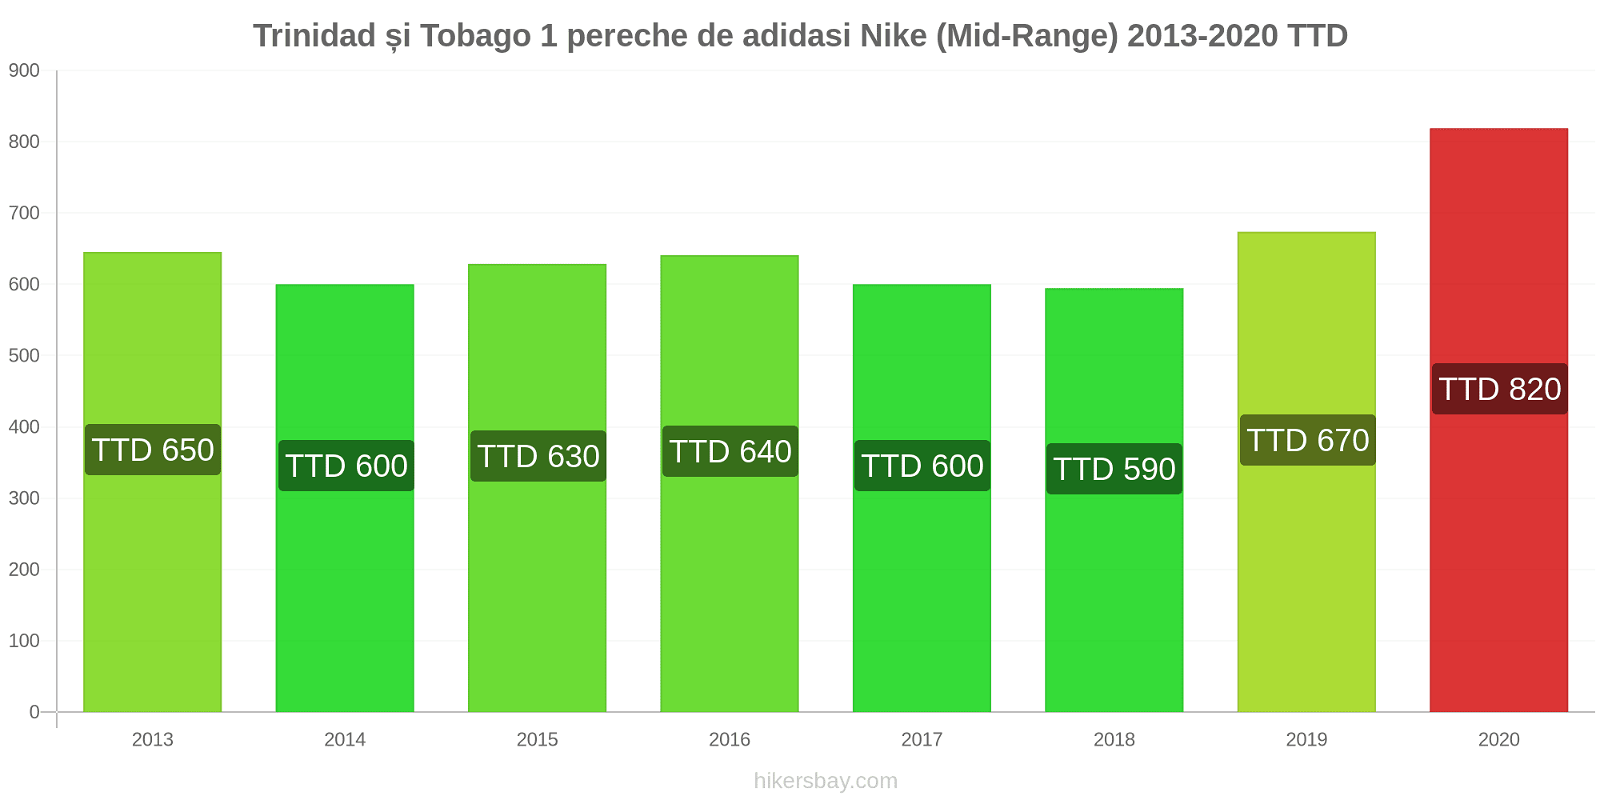 Trinidad și Tobago modificări de preț 1 pereche de adidasi Nike (Mid-Range) hikersbay.com